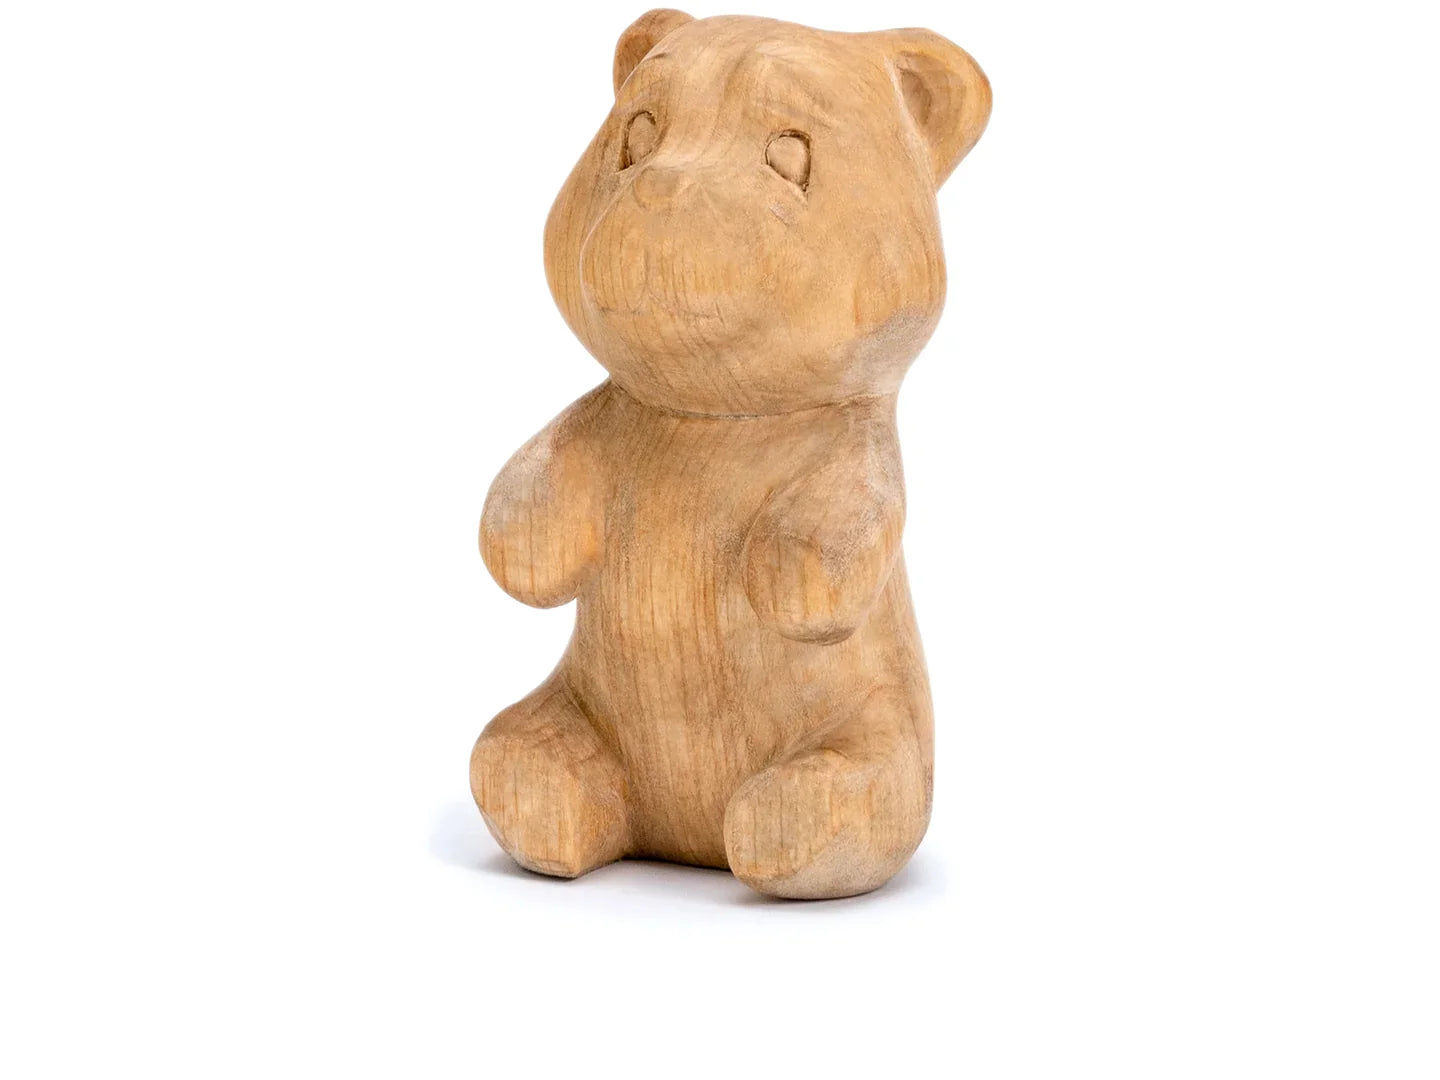 BeaverCraft DIY05 Bear Carving Kit Complete Starter Whittling Kit for Beginners, Adults, Teens, and Kids